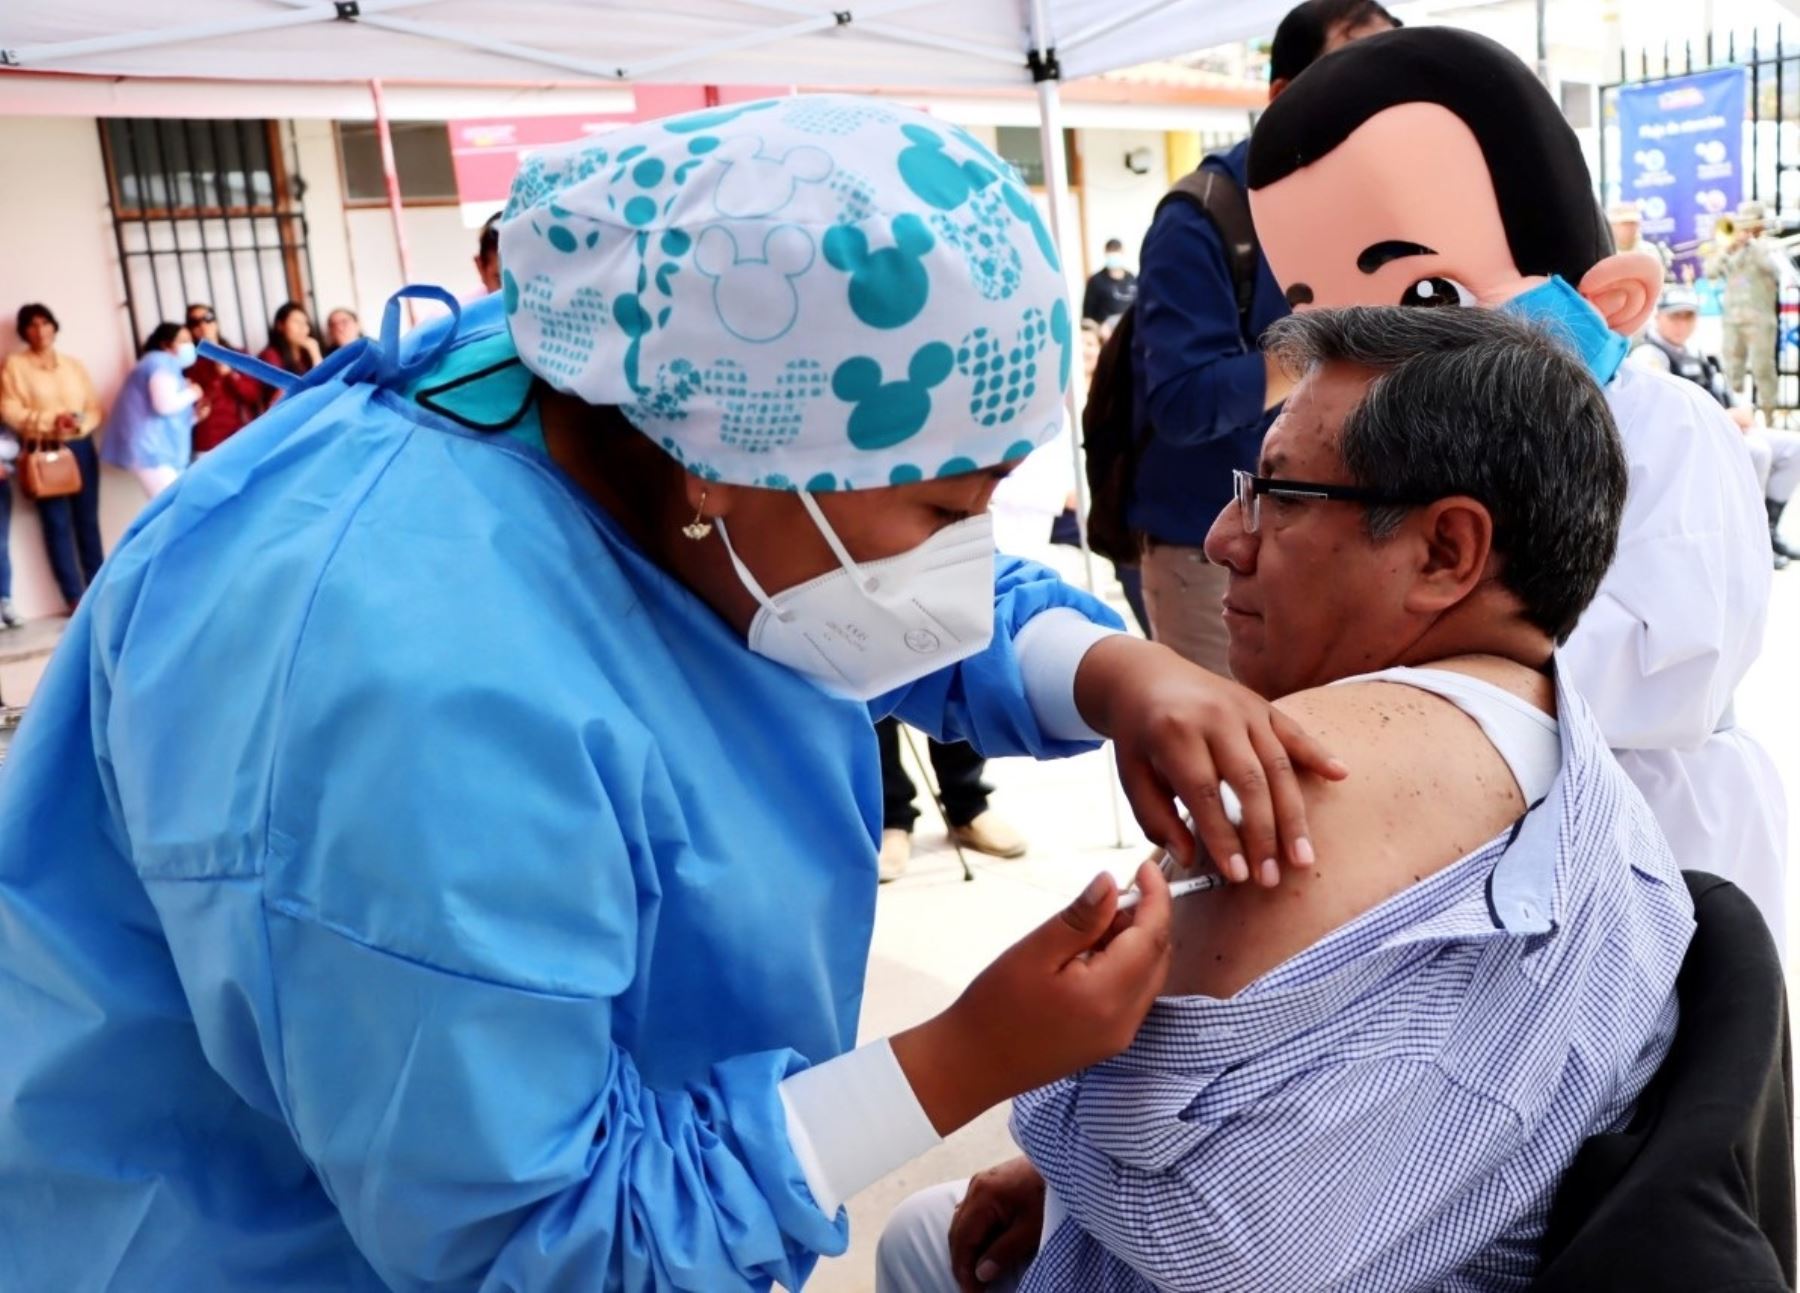 El titular de la Dirección Regional de Salud (Diresa) de Cajamarca, Víctor Zavaleta Gavidia, fue el primero en recibir la vacuna bivalente contra el covid-19. Se espera inmunizar a más de 11,000 trabajadores de salud de esa región. Foto: Eduard Lozano.